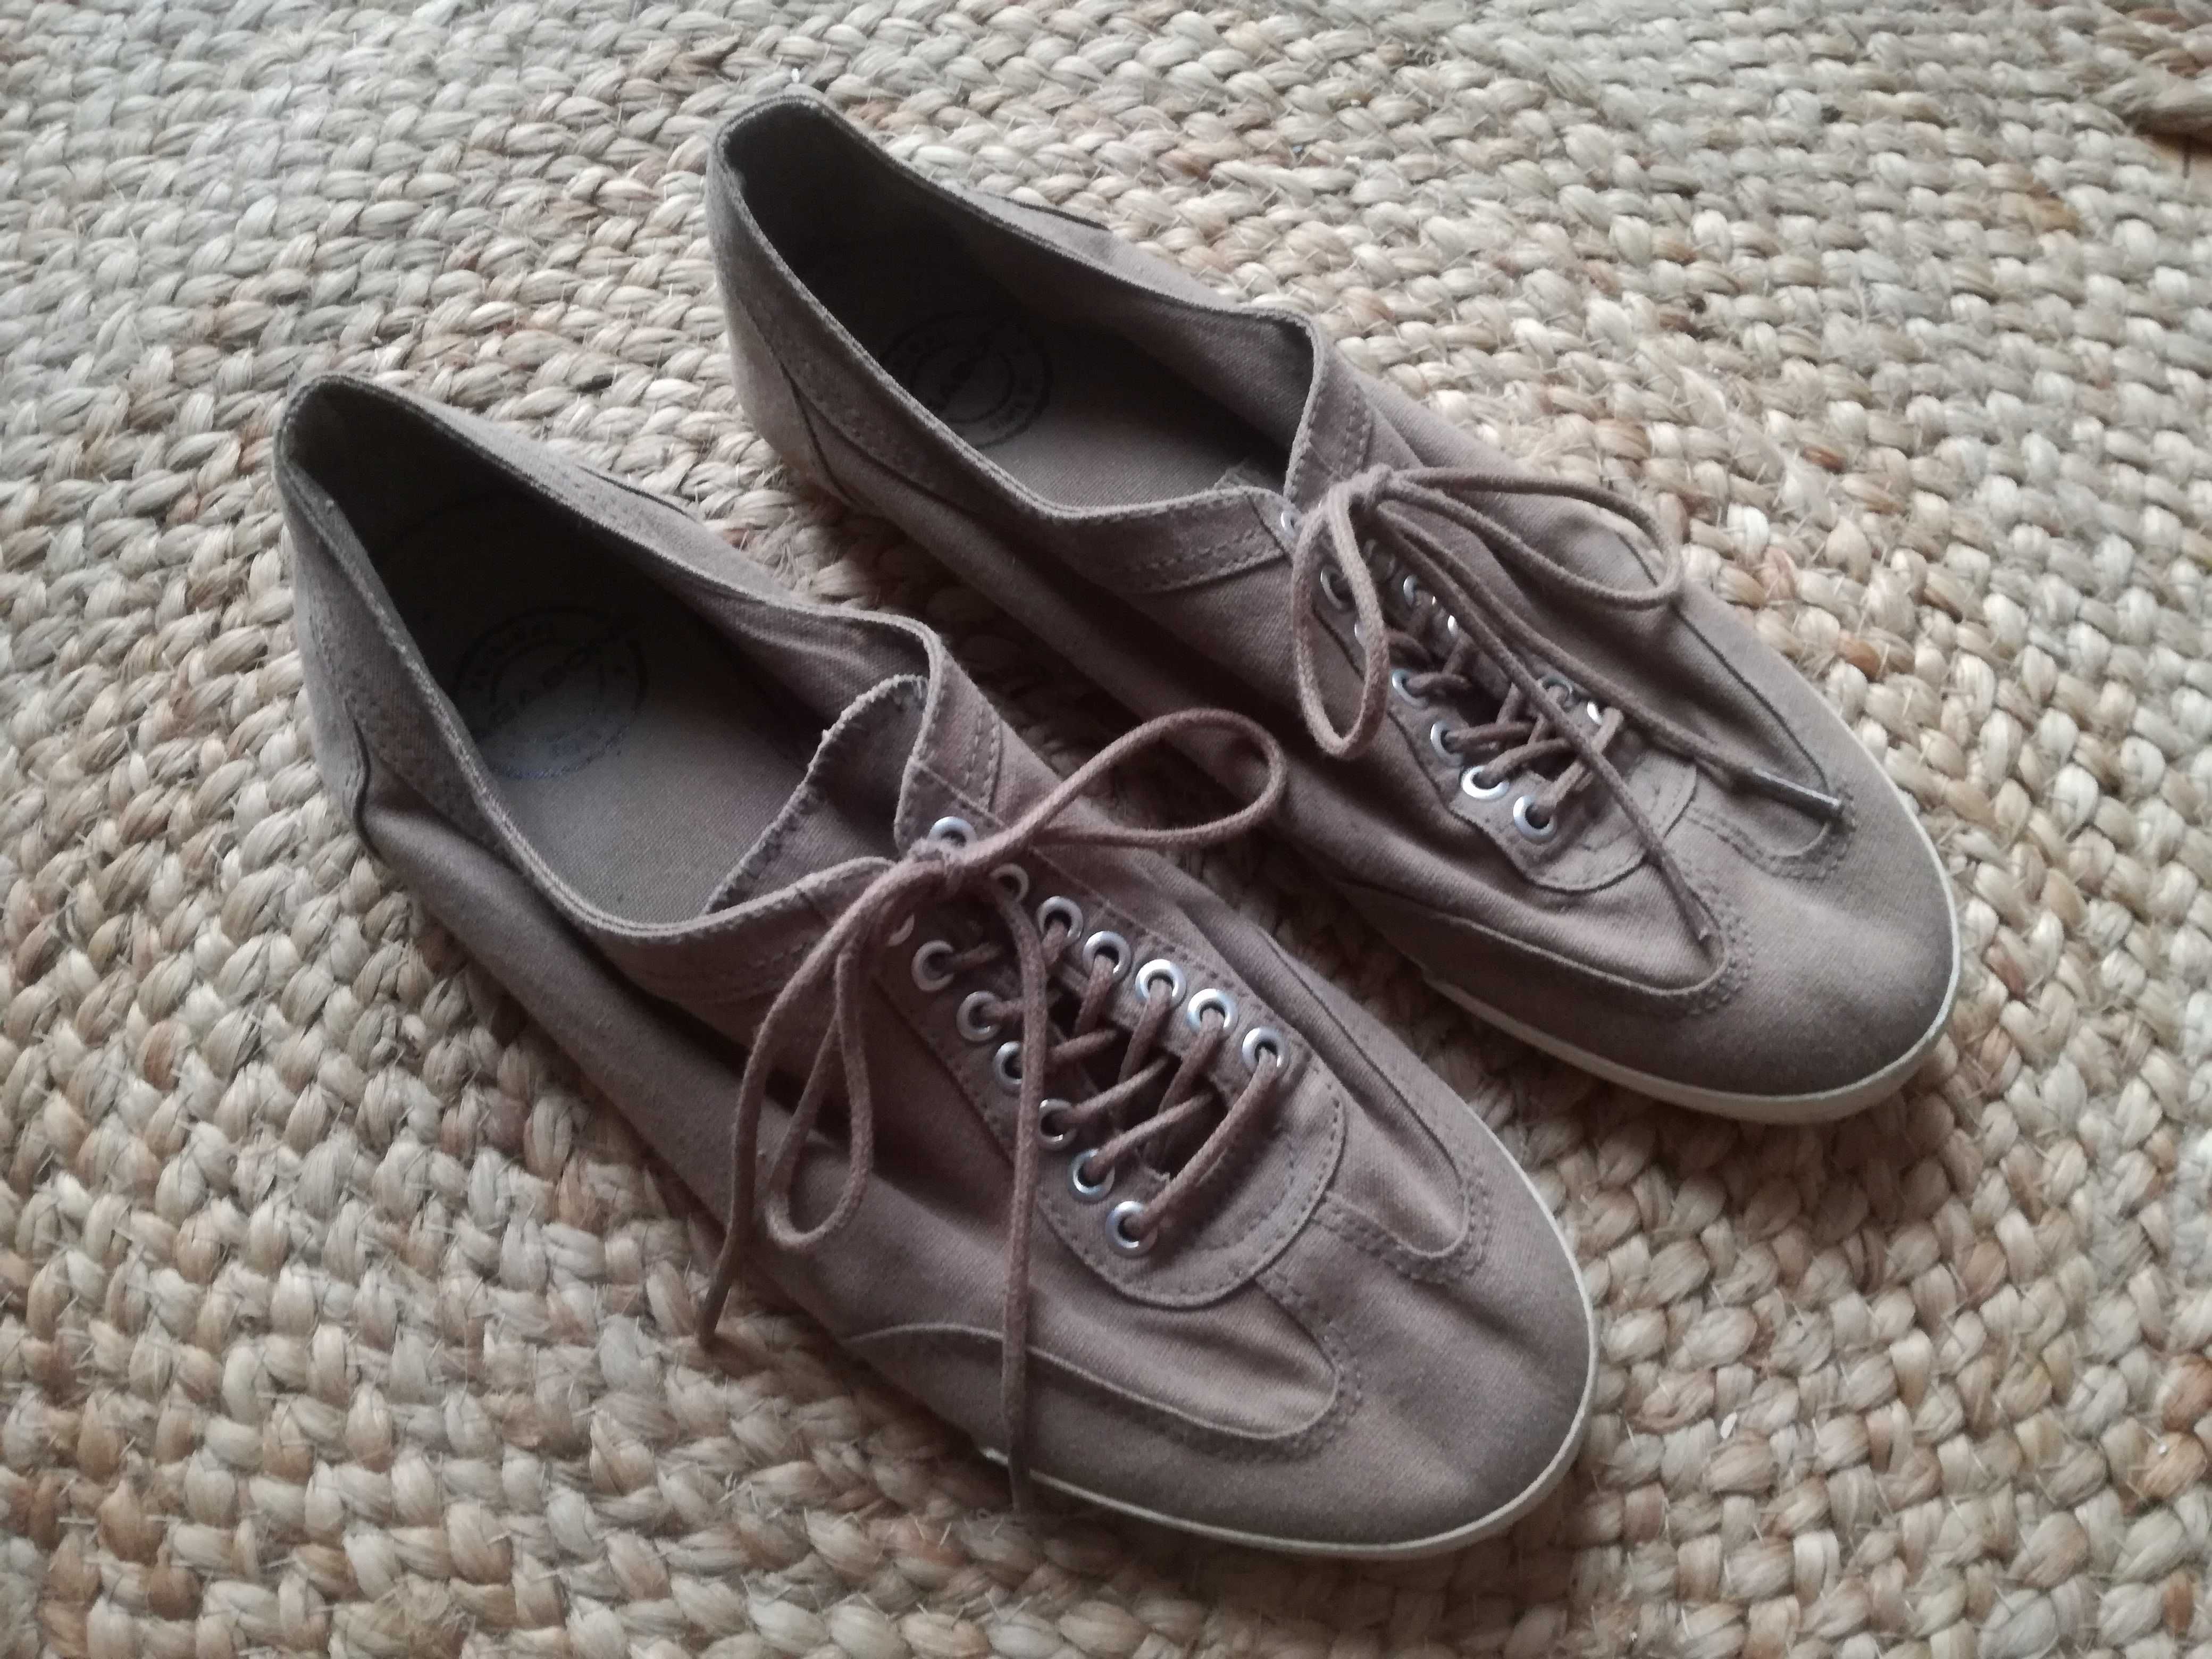 38 VAGABOND brązowe tenisówki damskie trampki buty boho retro vintage